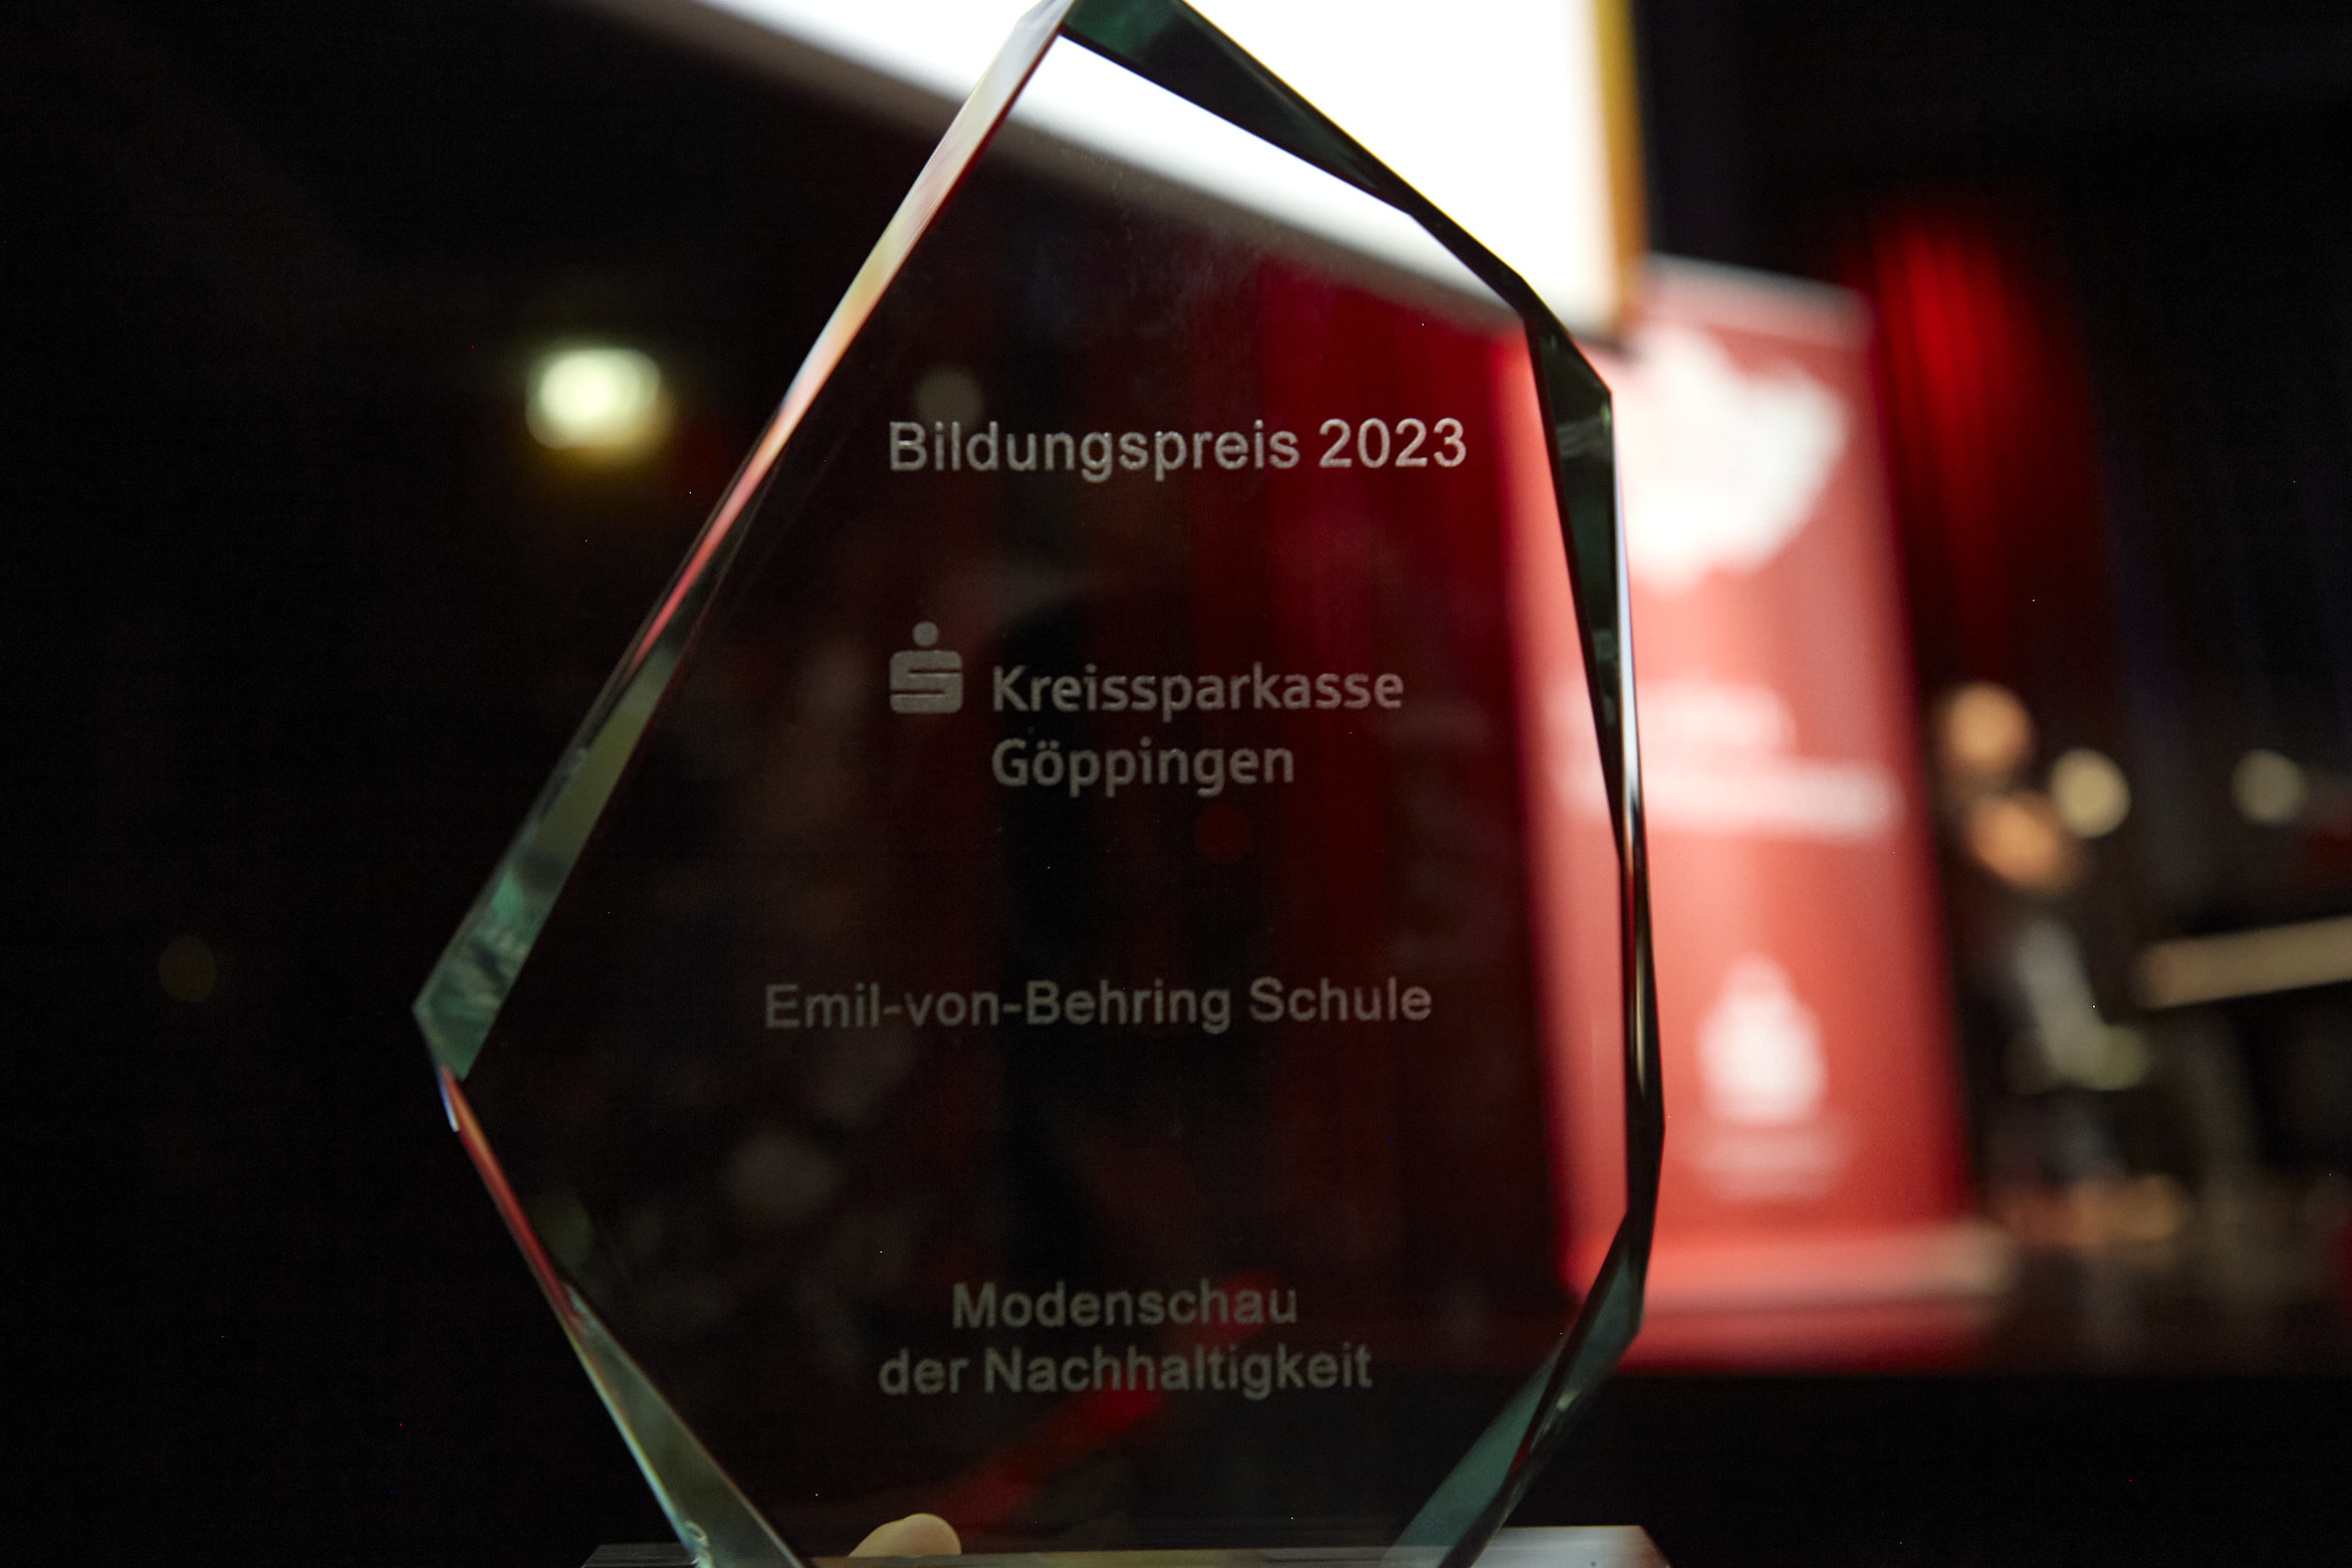 Bildungspreis für die Emil-von-Behring-Schule – Das Projekt „Modenschau der Nachhaltigkeit“ hat die Jury der Kreissparkasse Göppingen überzeugt